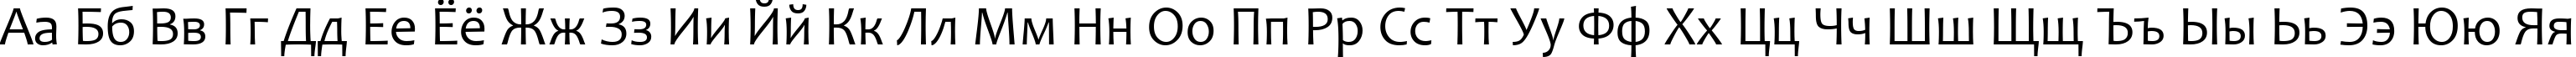 Пример написания русского алфавита шрифтом Candara